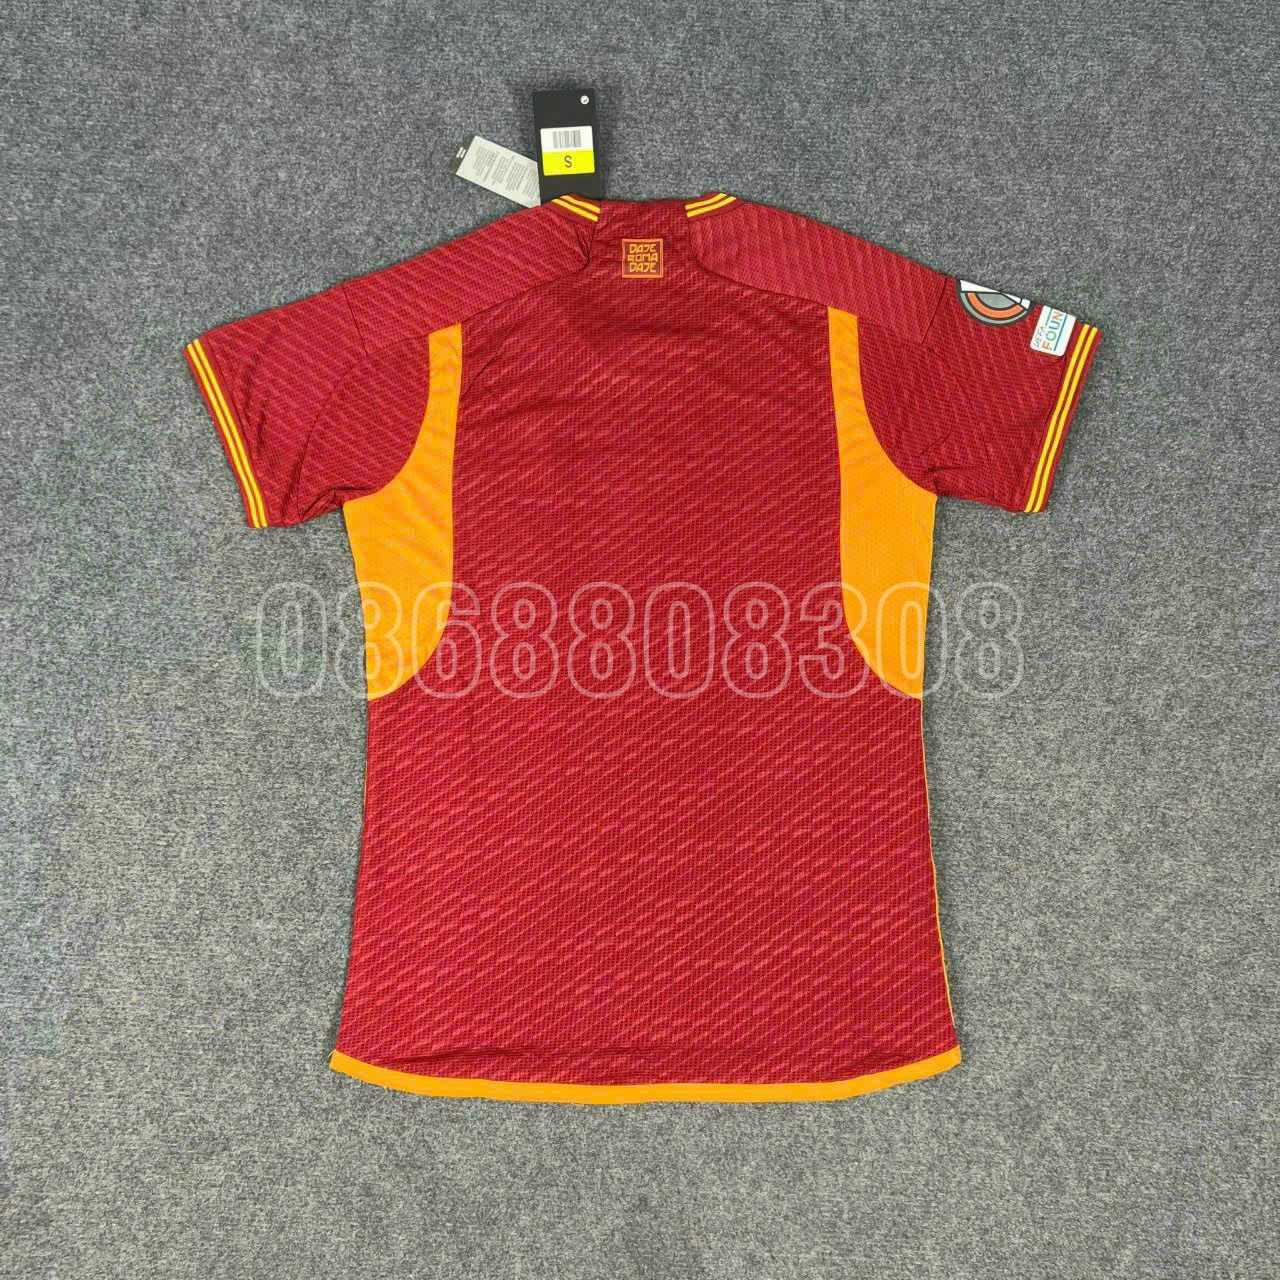 Bộ quần áo bóng đá AS Roma 23 24 in riyadh season màu đỏ sân nhà năm 2023 2024 logo đầu cáo thêu vải mè lỗ thái cổ tam giác mặt trước